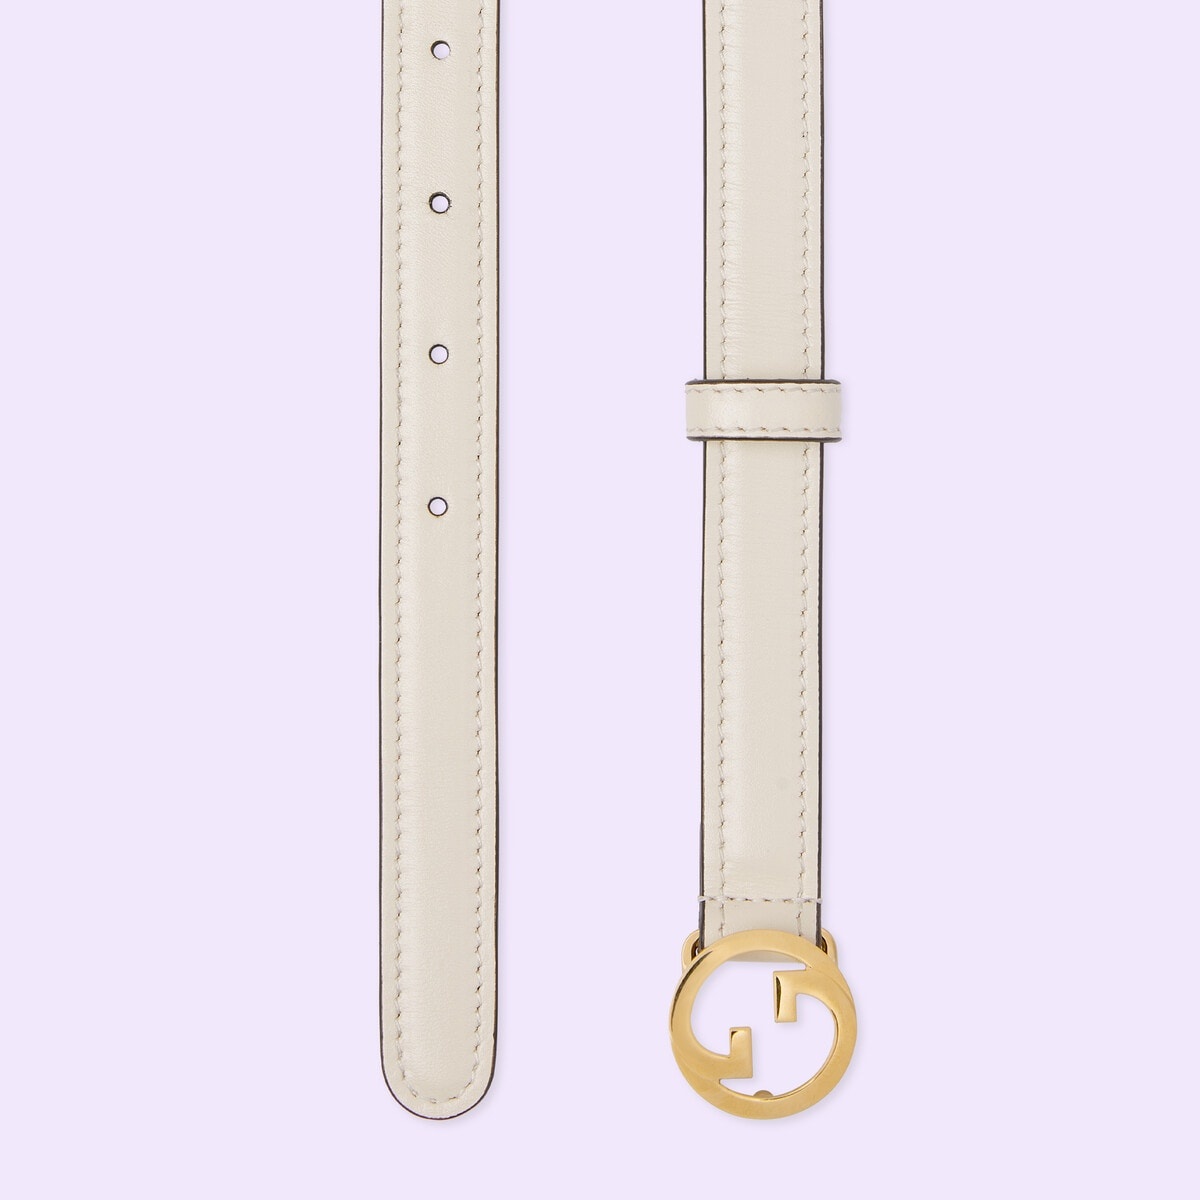 Gucci Men's Blondie Monogram Belt